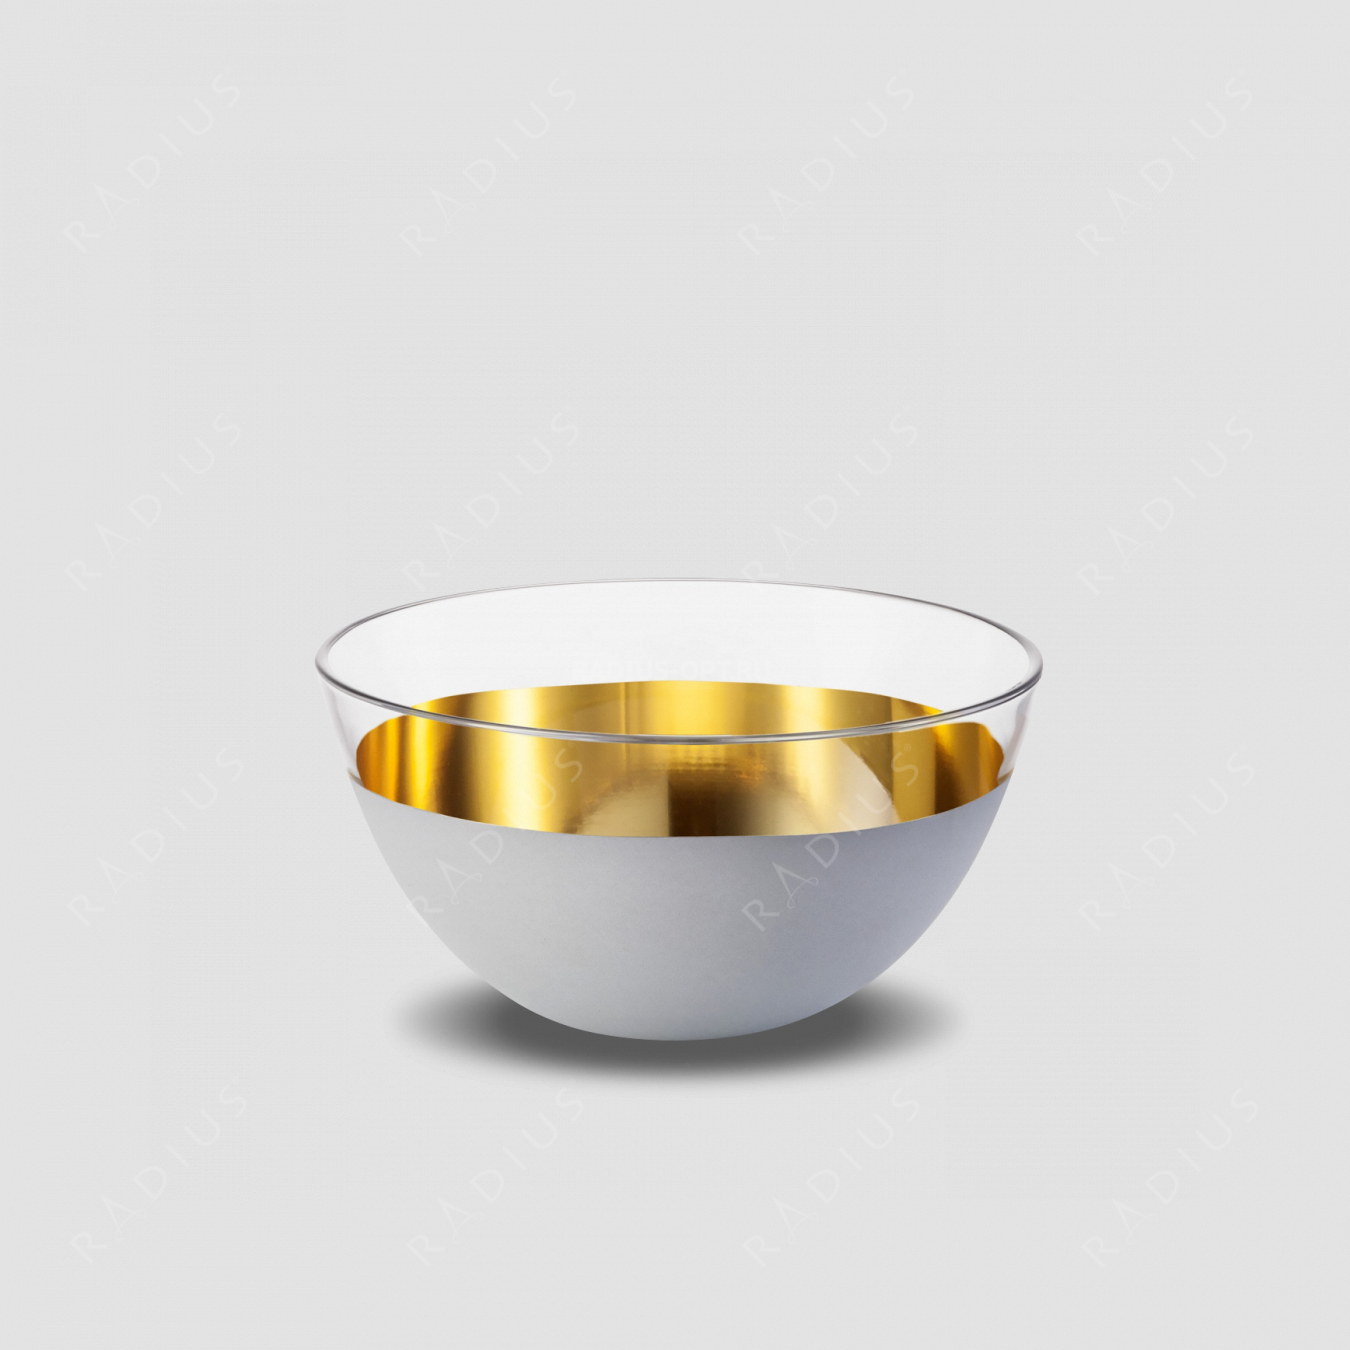 Чаша глубокая Weiss, диаметр: 14 см, материал: бессвинцовый хрусталь, цвет: белый/золото, серия Cosmo, EISCH, Германия